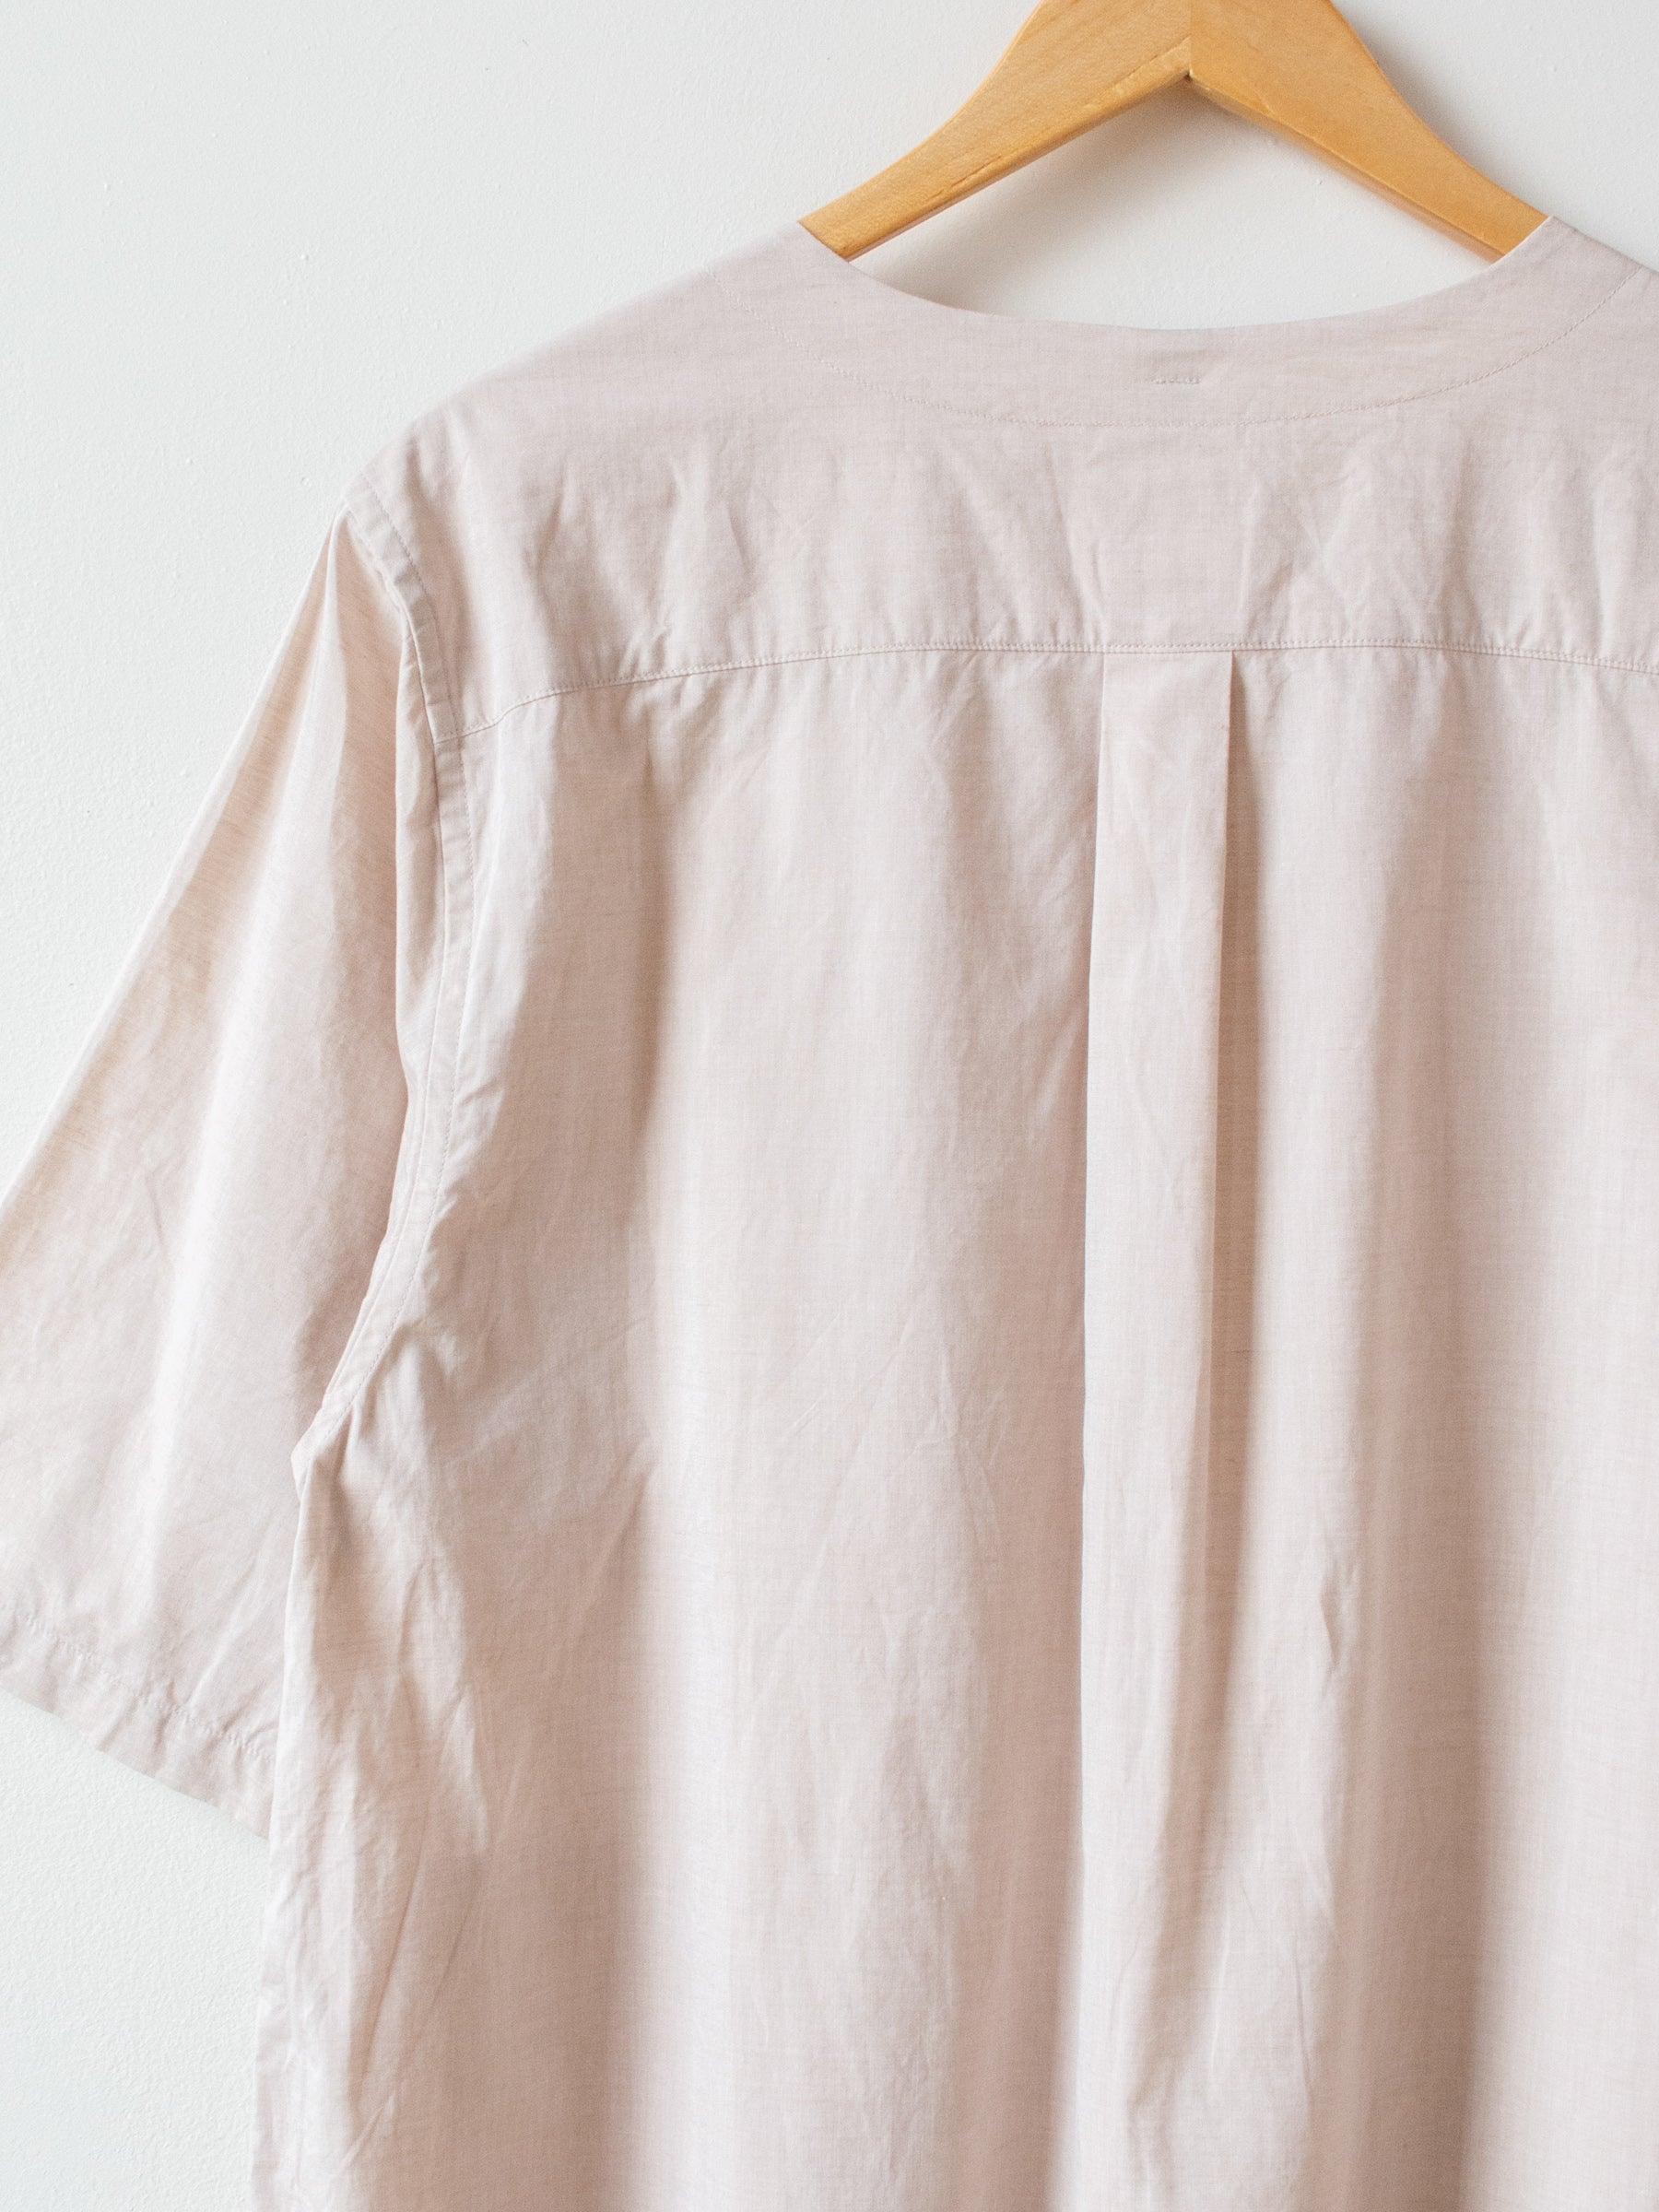 Namu Shop - ts(s) Lightweight Chambray Pullover Shirt Dress - Pink Beige